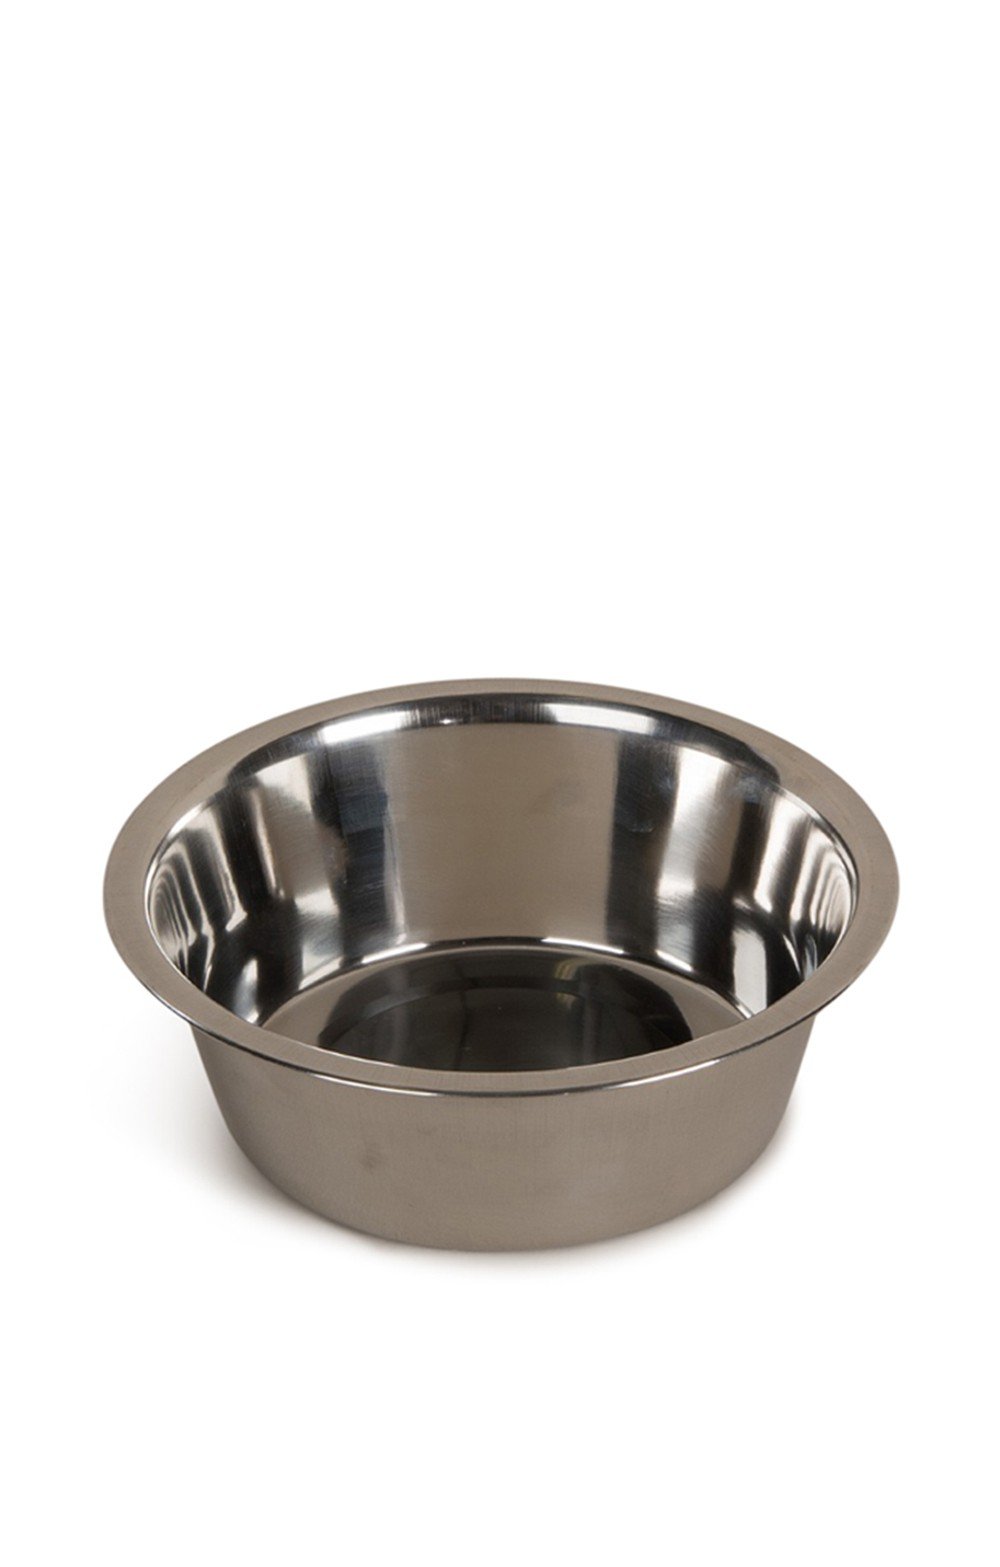 House Of Bruar Medium Stainless Steel Non-Slip Dog Bowl